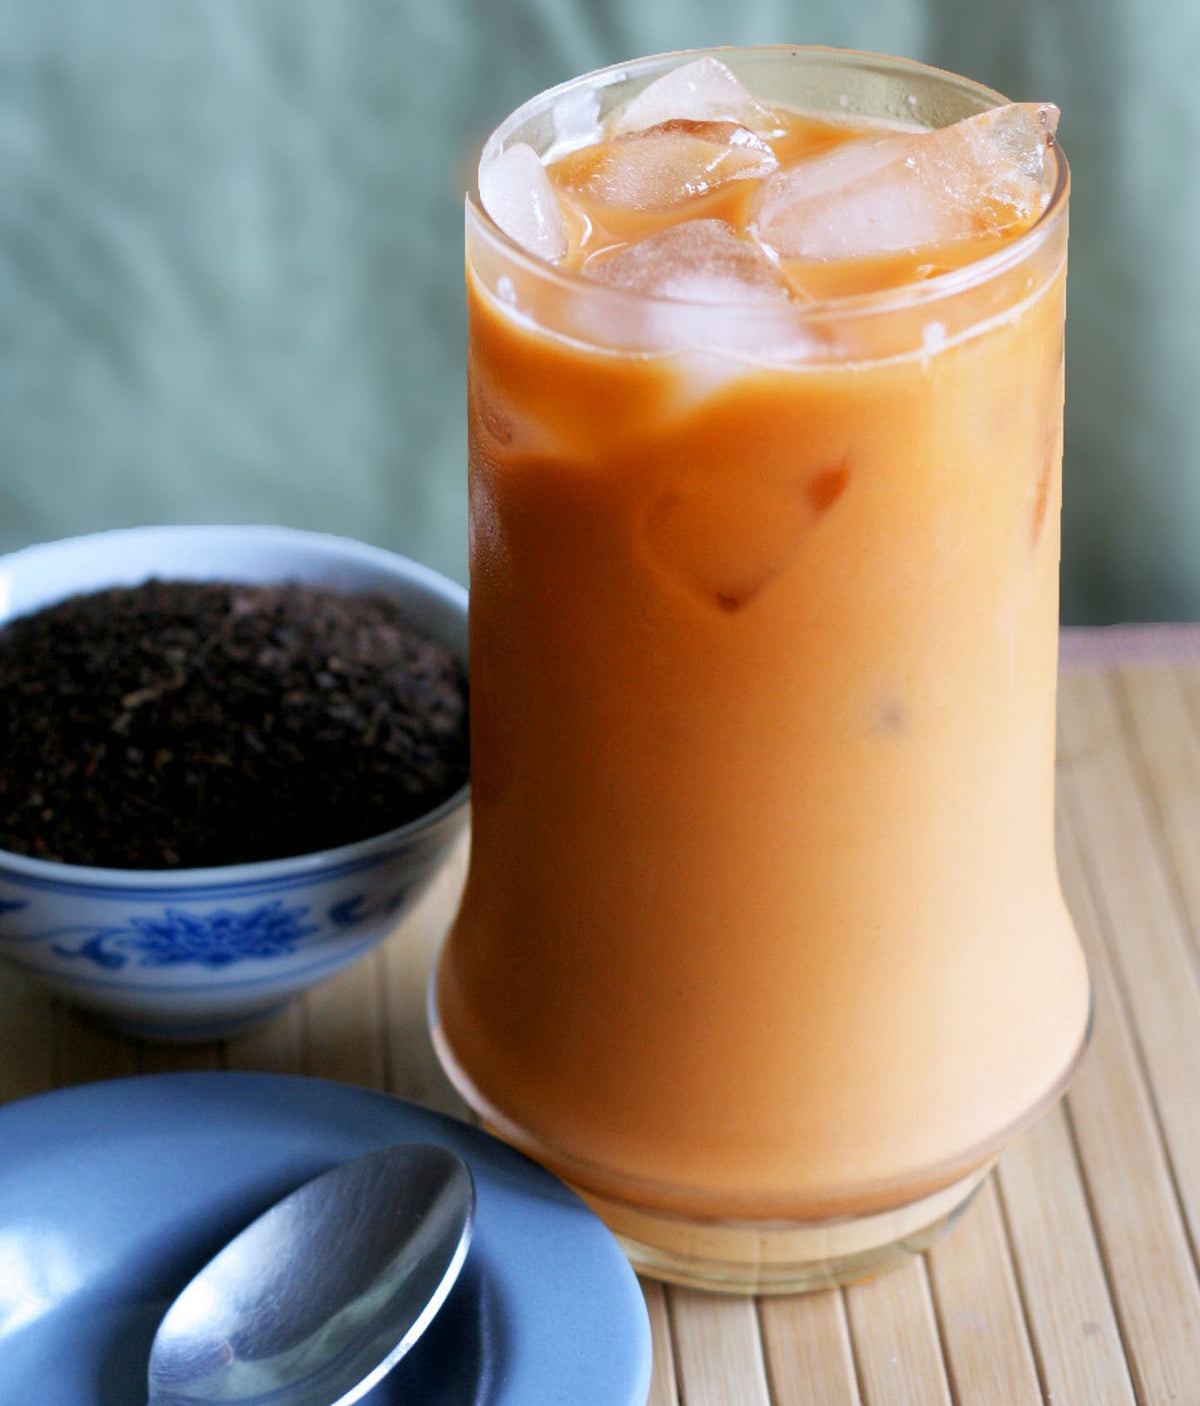 Thai Tea Loose Leaf 8 oz | Cha Thai